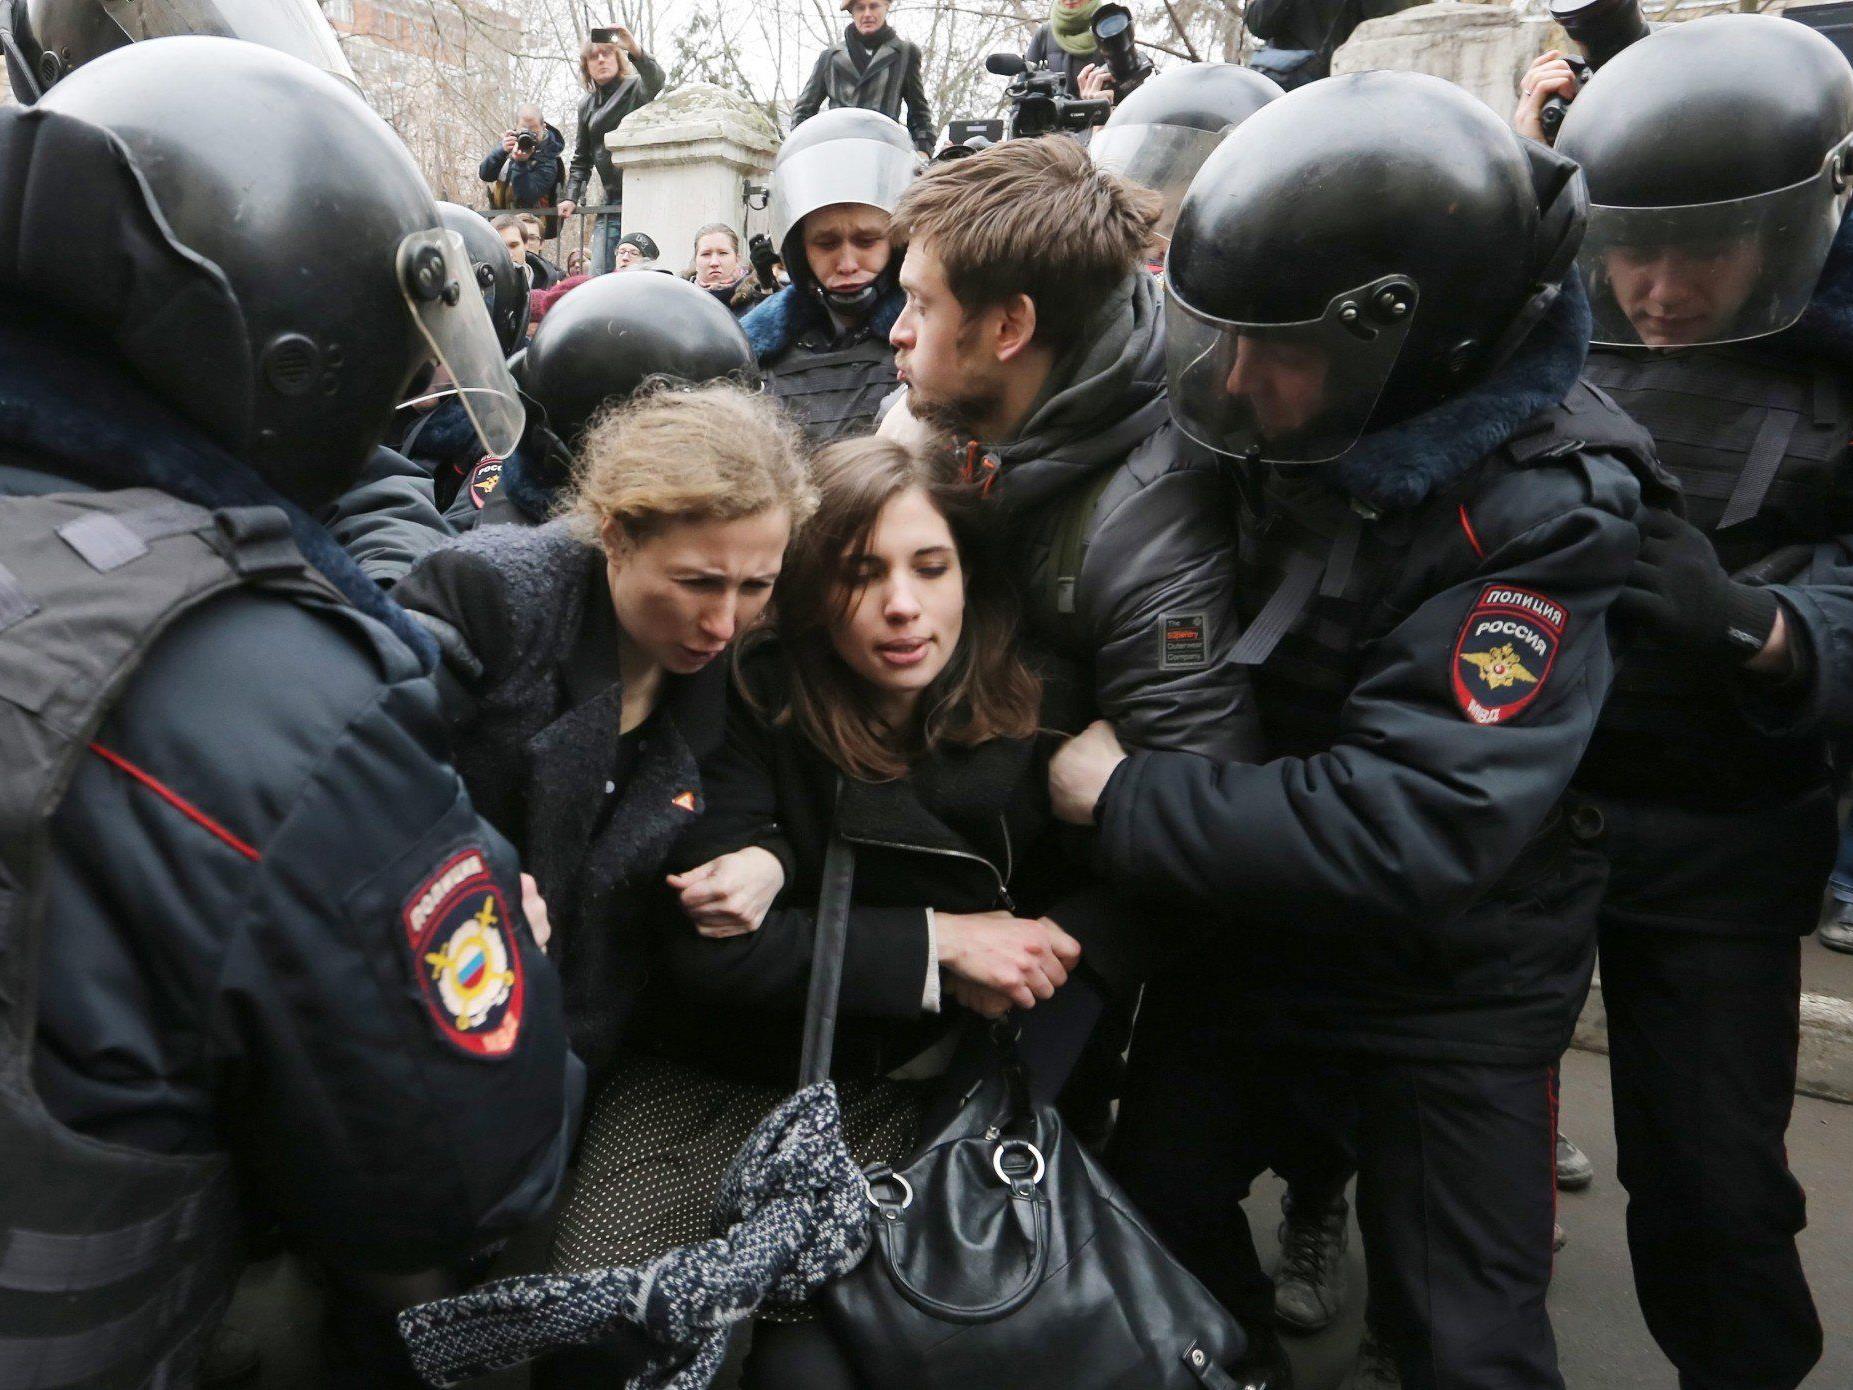 Bilder zeigen Aktivistinnen in Polizeigewahrsam.